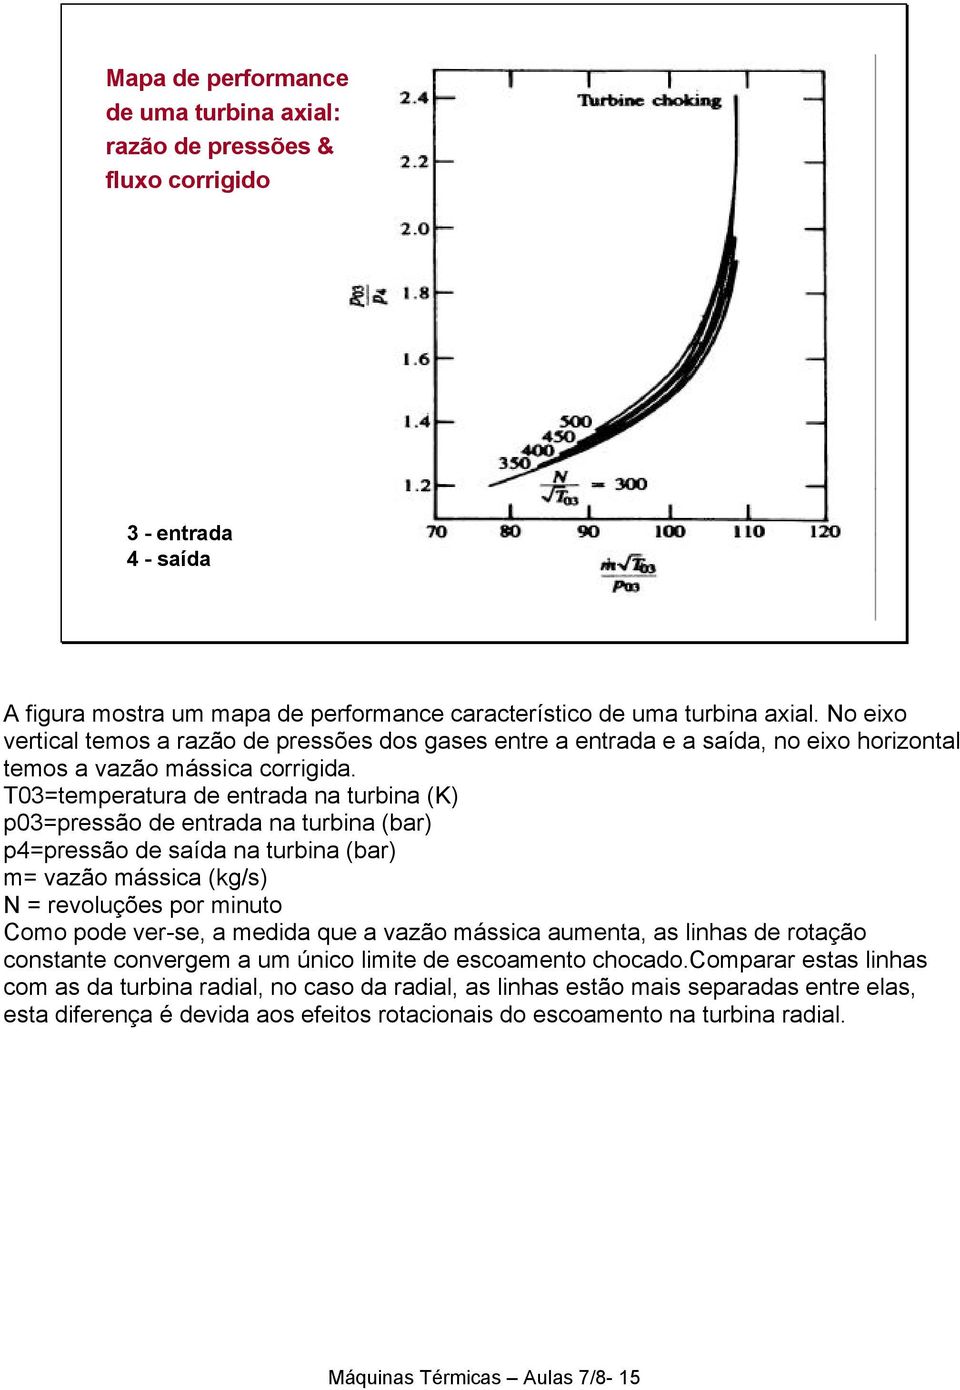 T0=temperatura de entrada na turbina (K p0=pressão de entrada na turbina (bar p4=pressão de saída na turbina (bar m= vazão mássica (kg/s N = revoluções por minuto Como pode ver-se, a medida que a